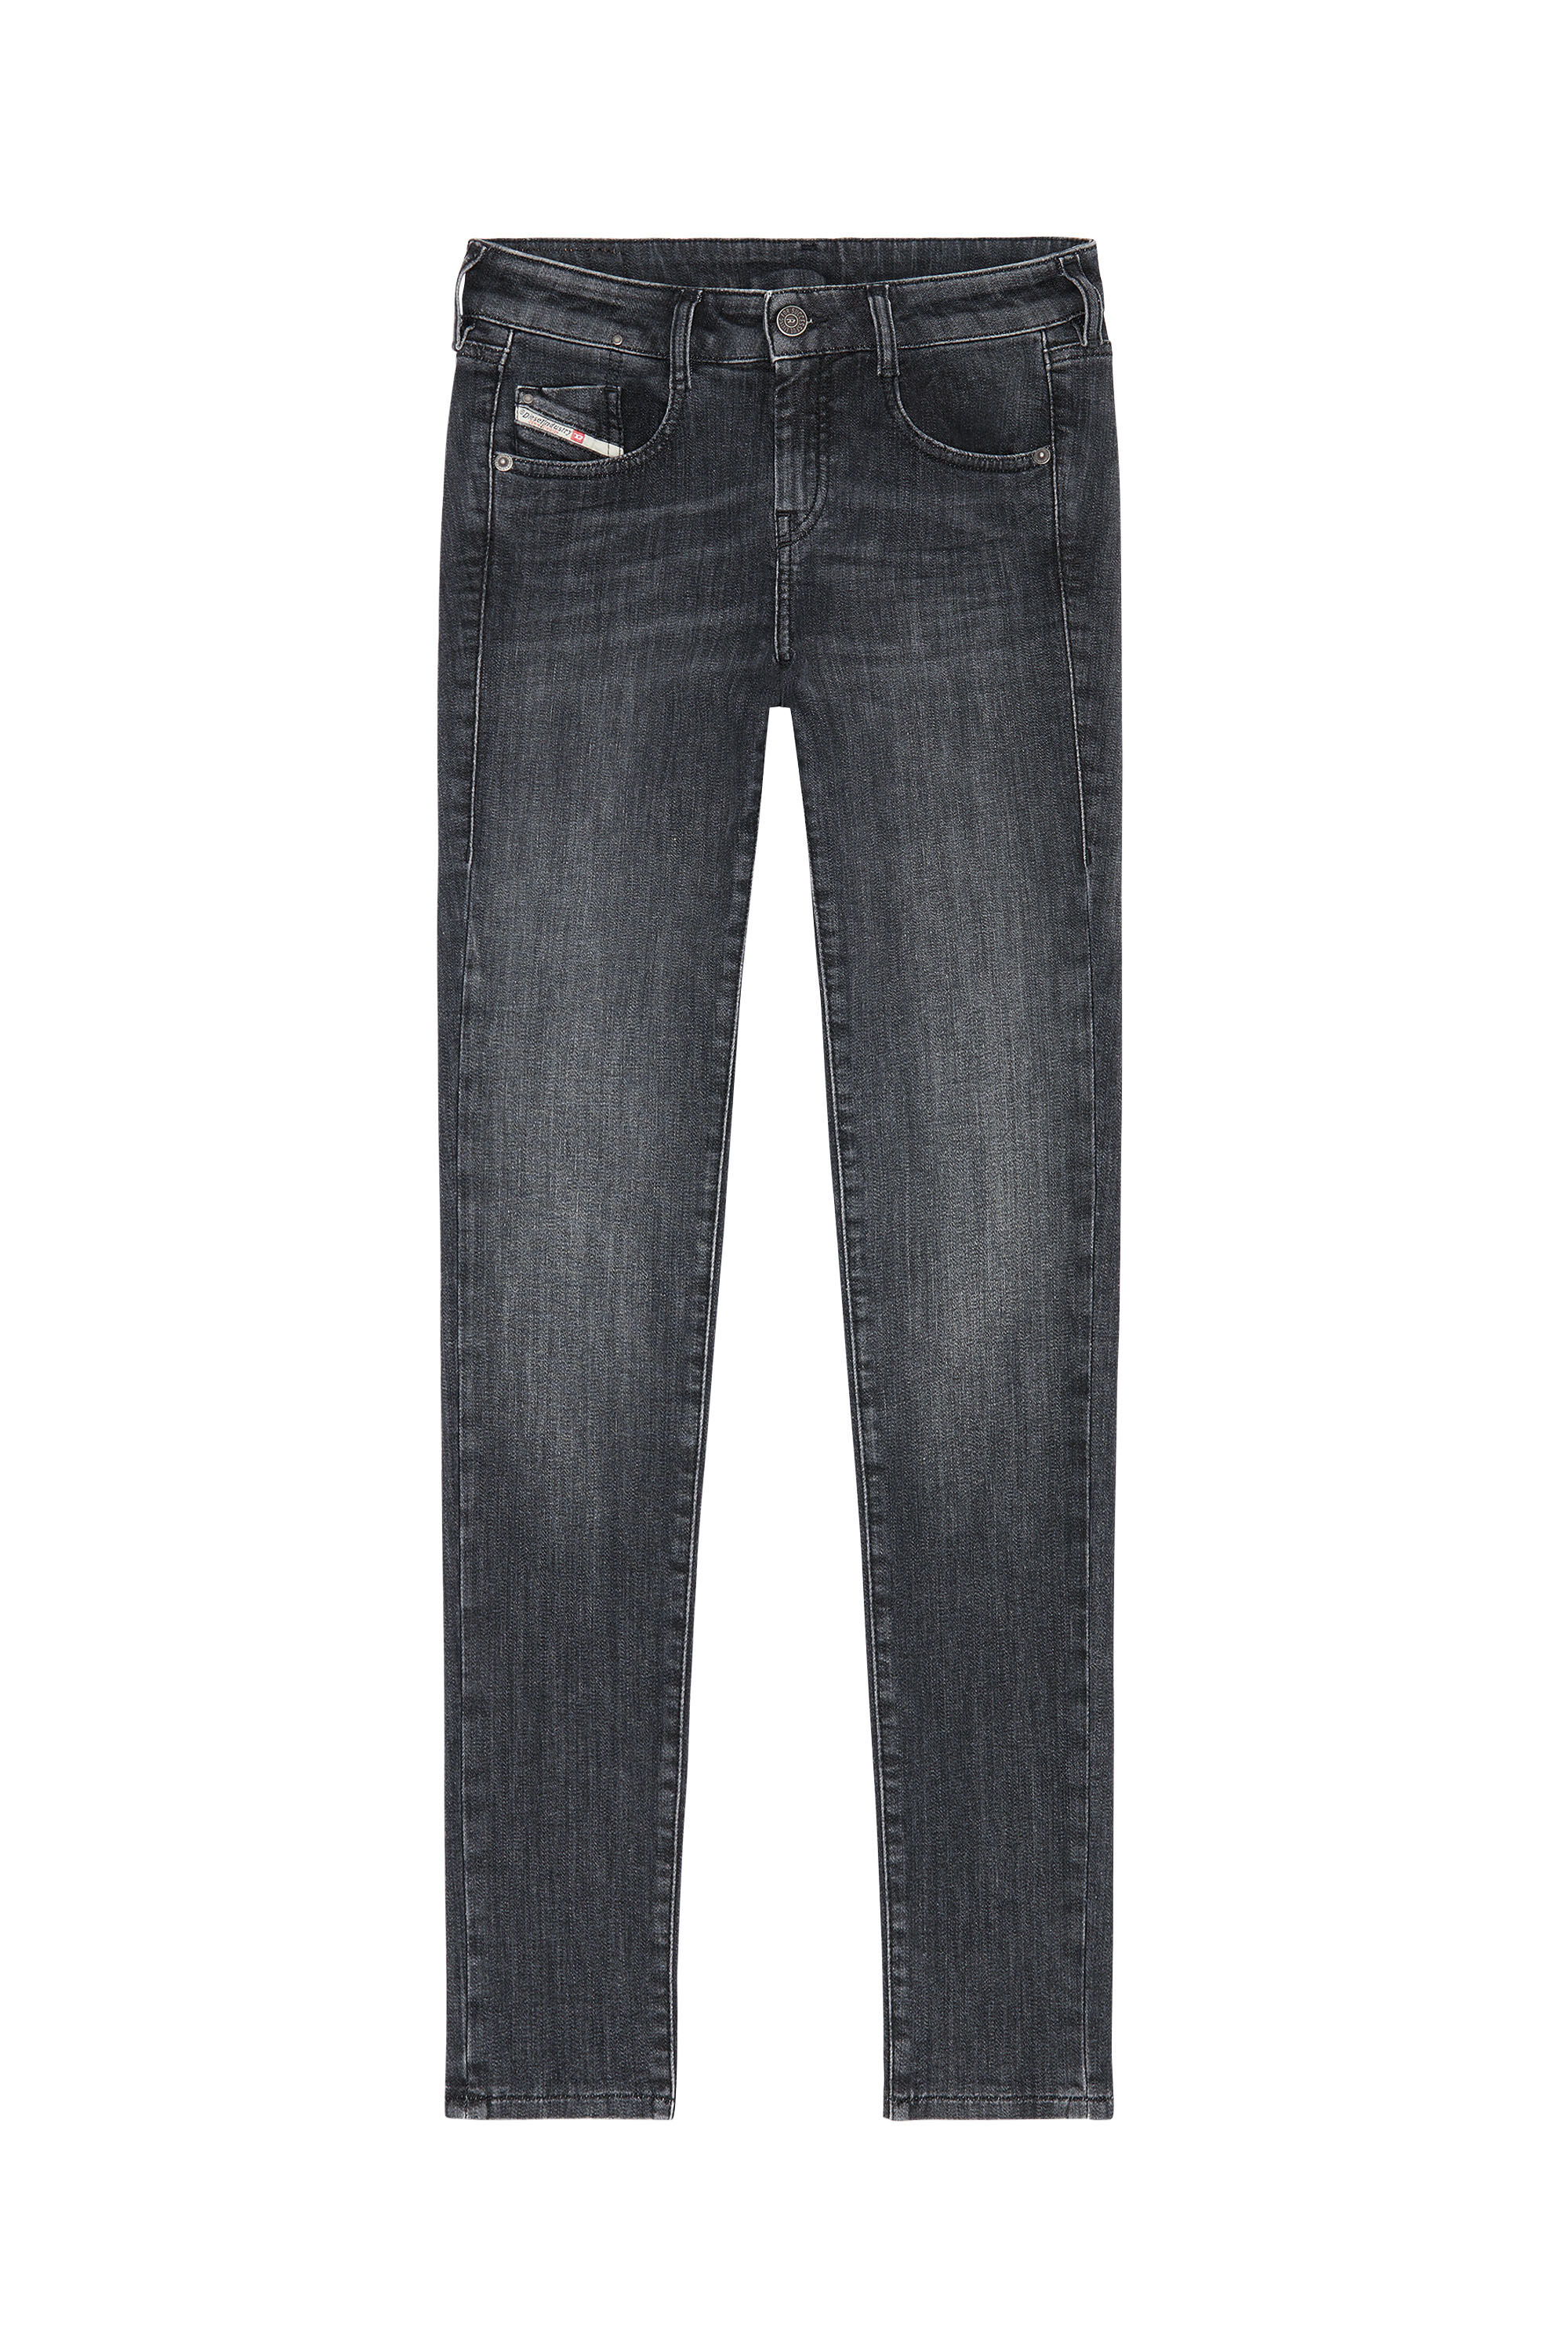 Diesel - D-Ollies JoggJeans® 09D52 Slim, Black/Dark grey - Image 2